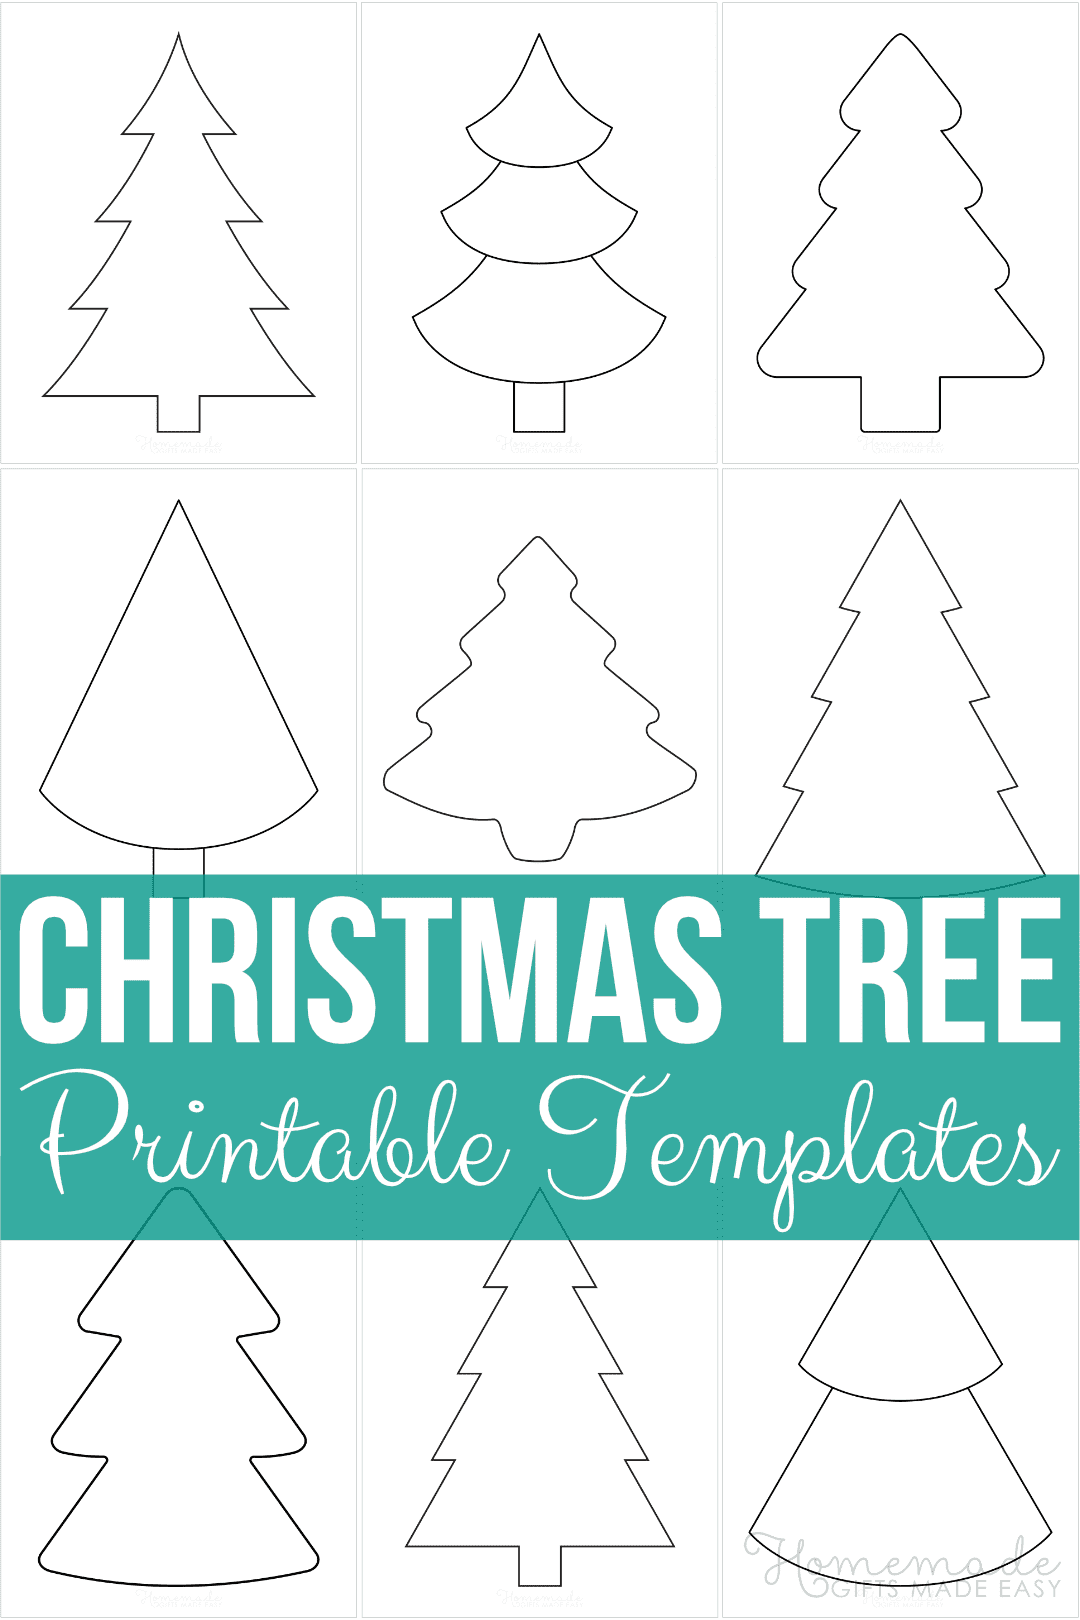 Christmas Tree Templates Free Printable